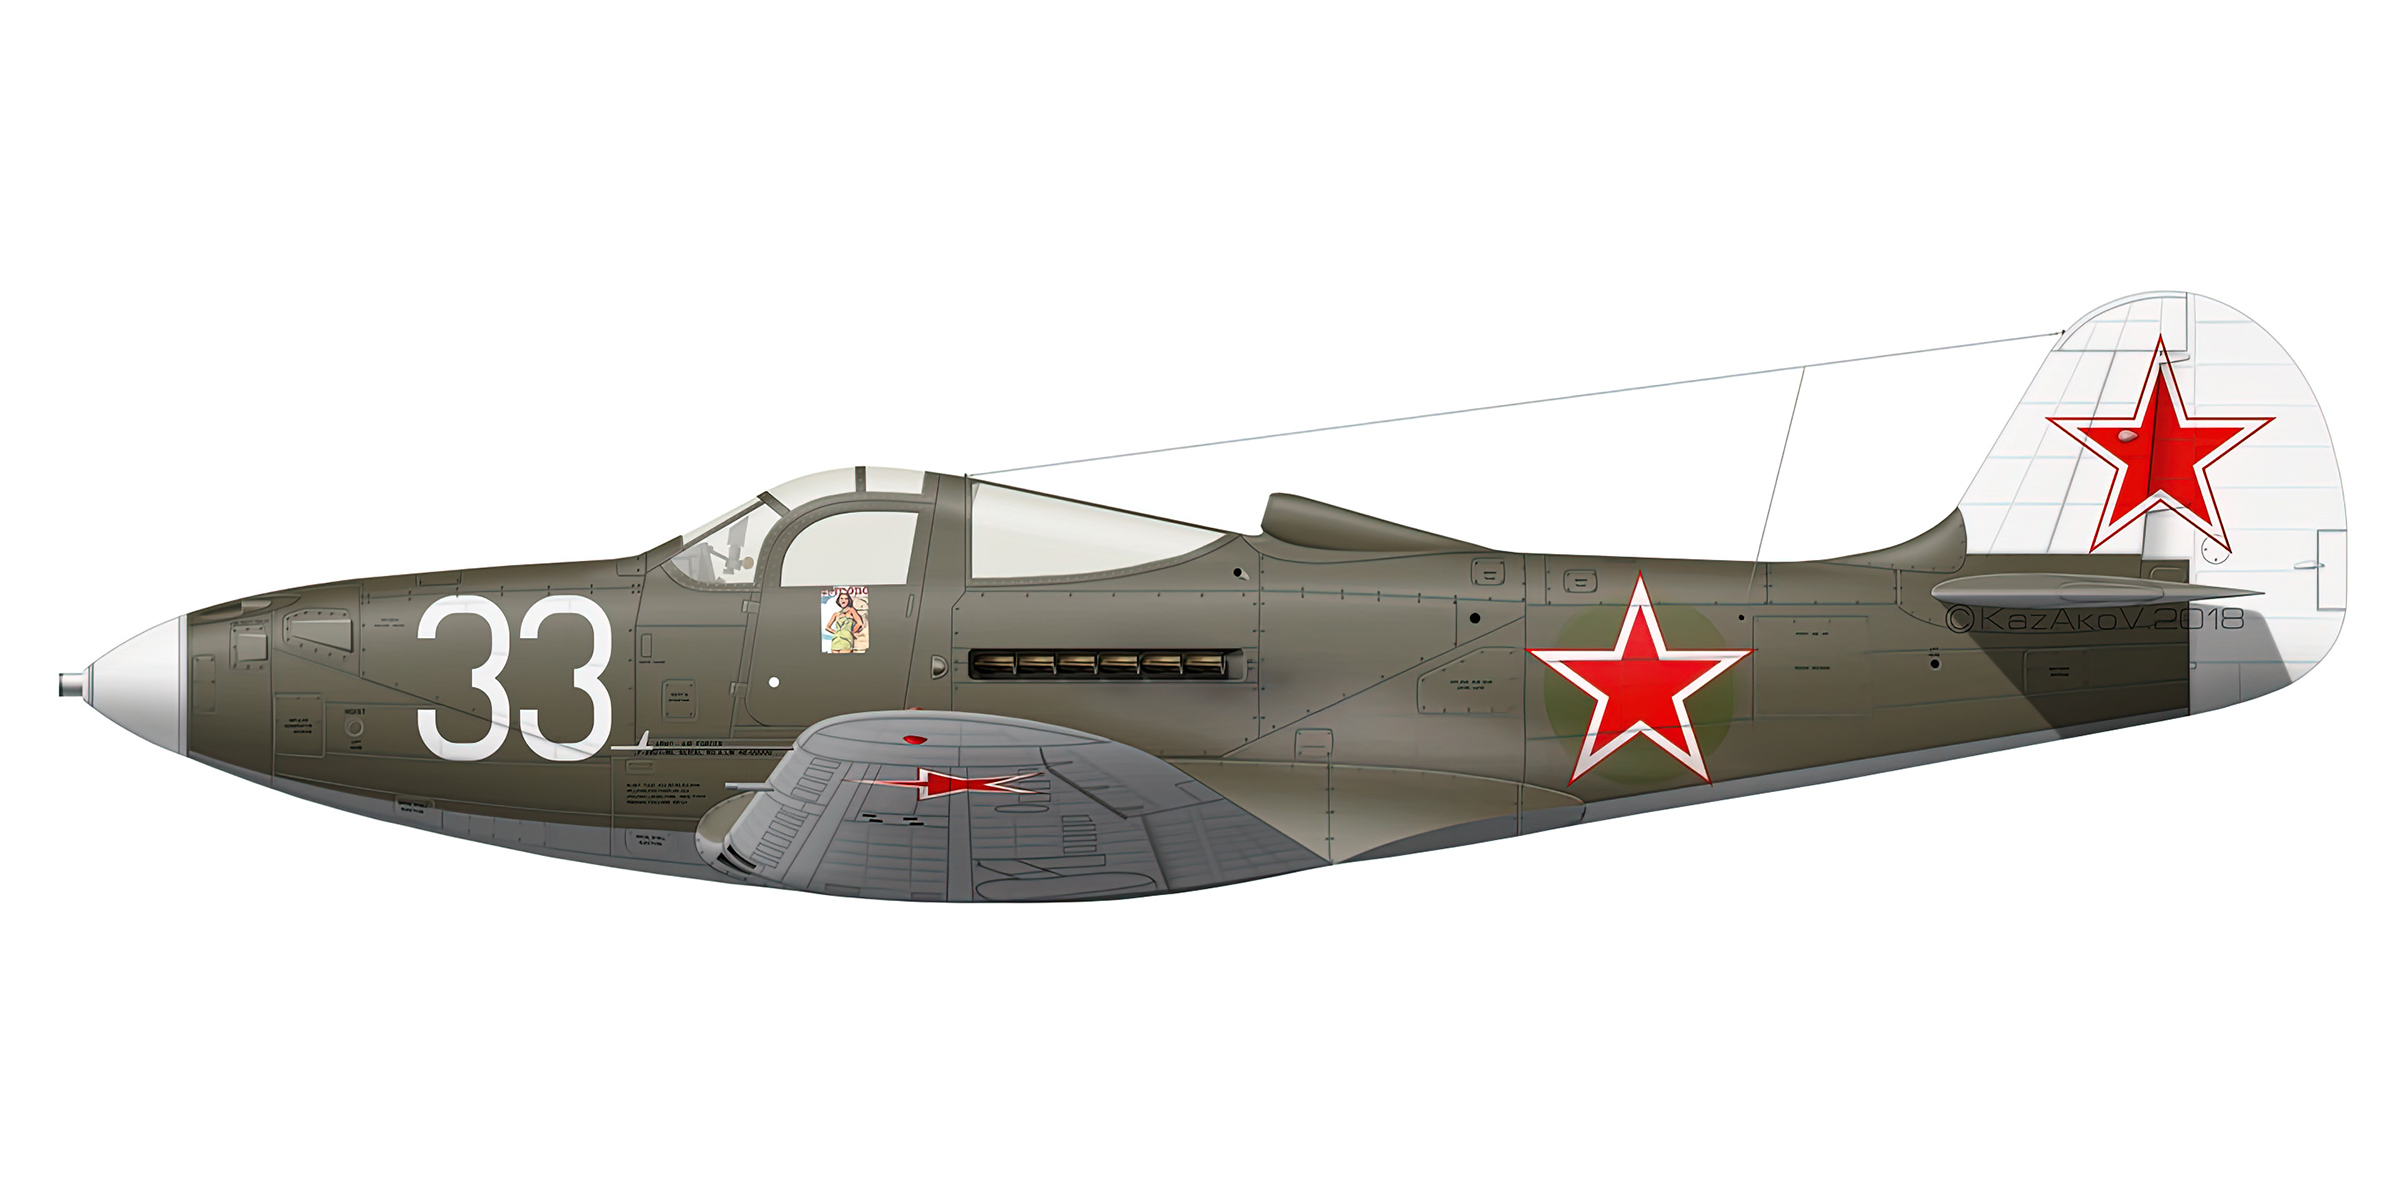 Bell P 39 Airacobra 102GvIAP 7IAK White 33 Levashovo Russia 1943 0A